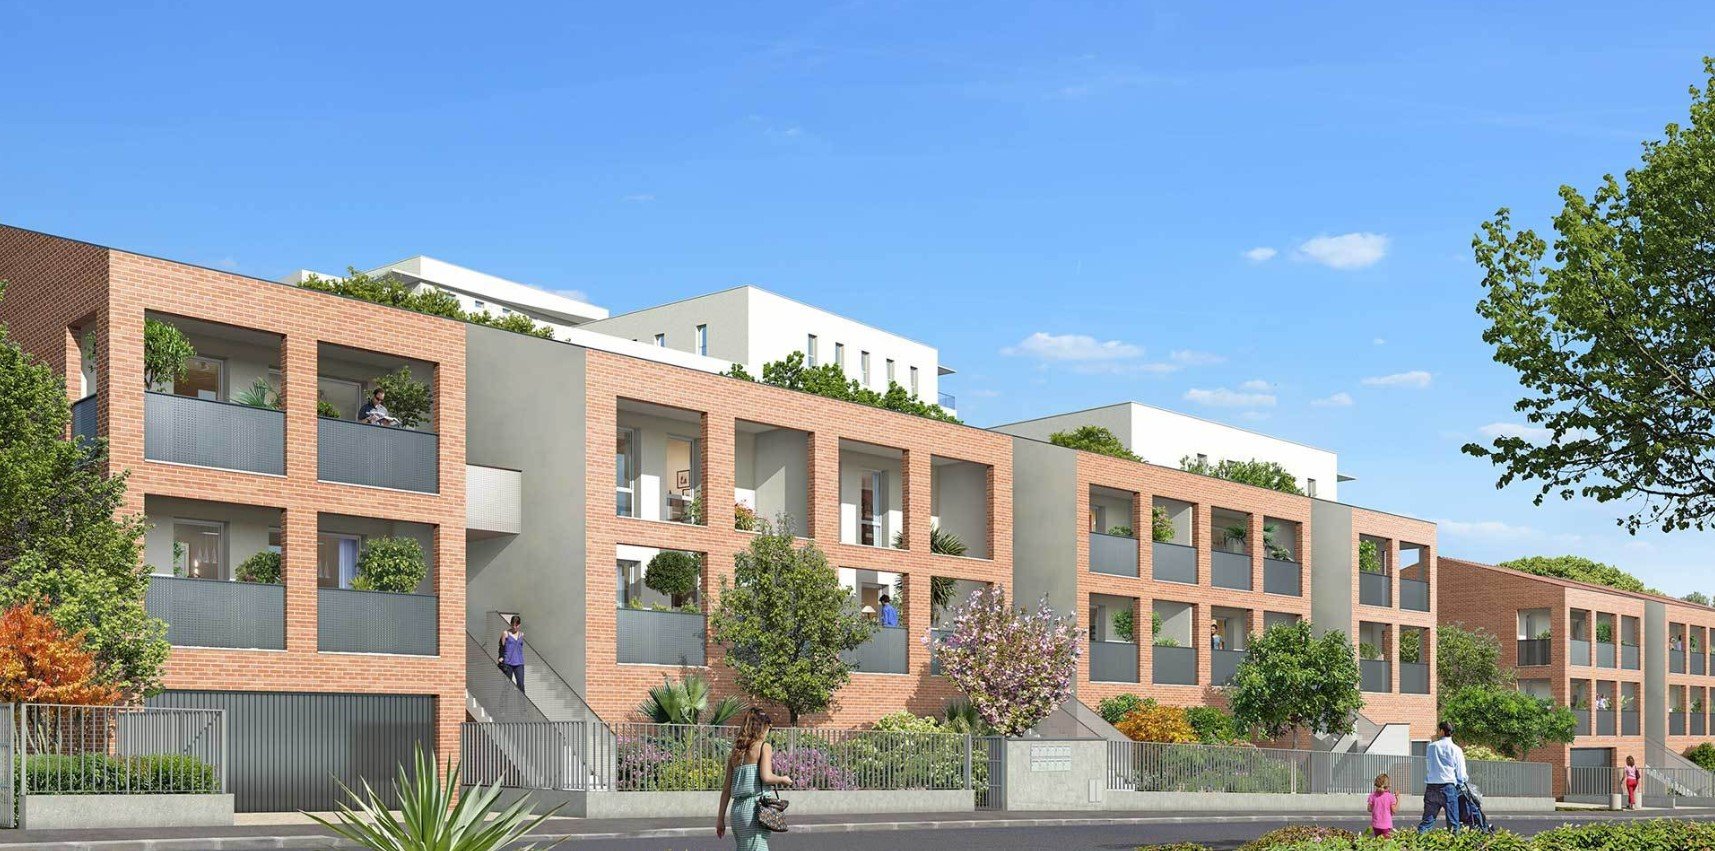 Programme immobilier neuf Toulouse - Croix de Pierre (2 à 5 pièces, 37 à 143 m²)